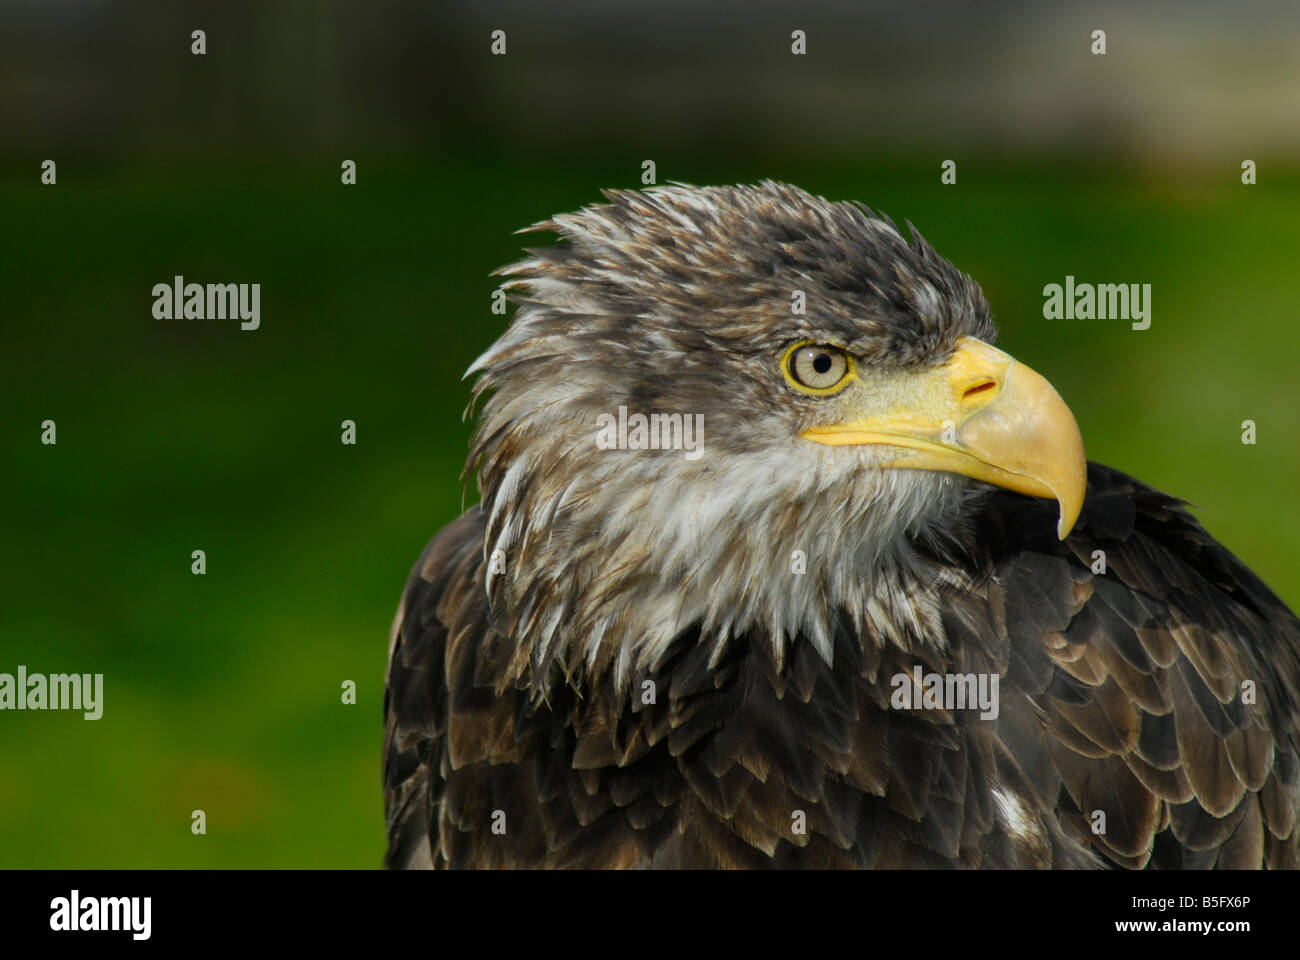 Juvenile Bald Eagle Portrait Stock Photo